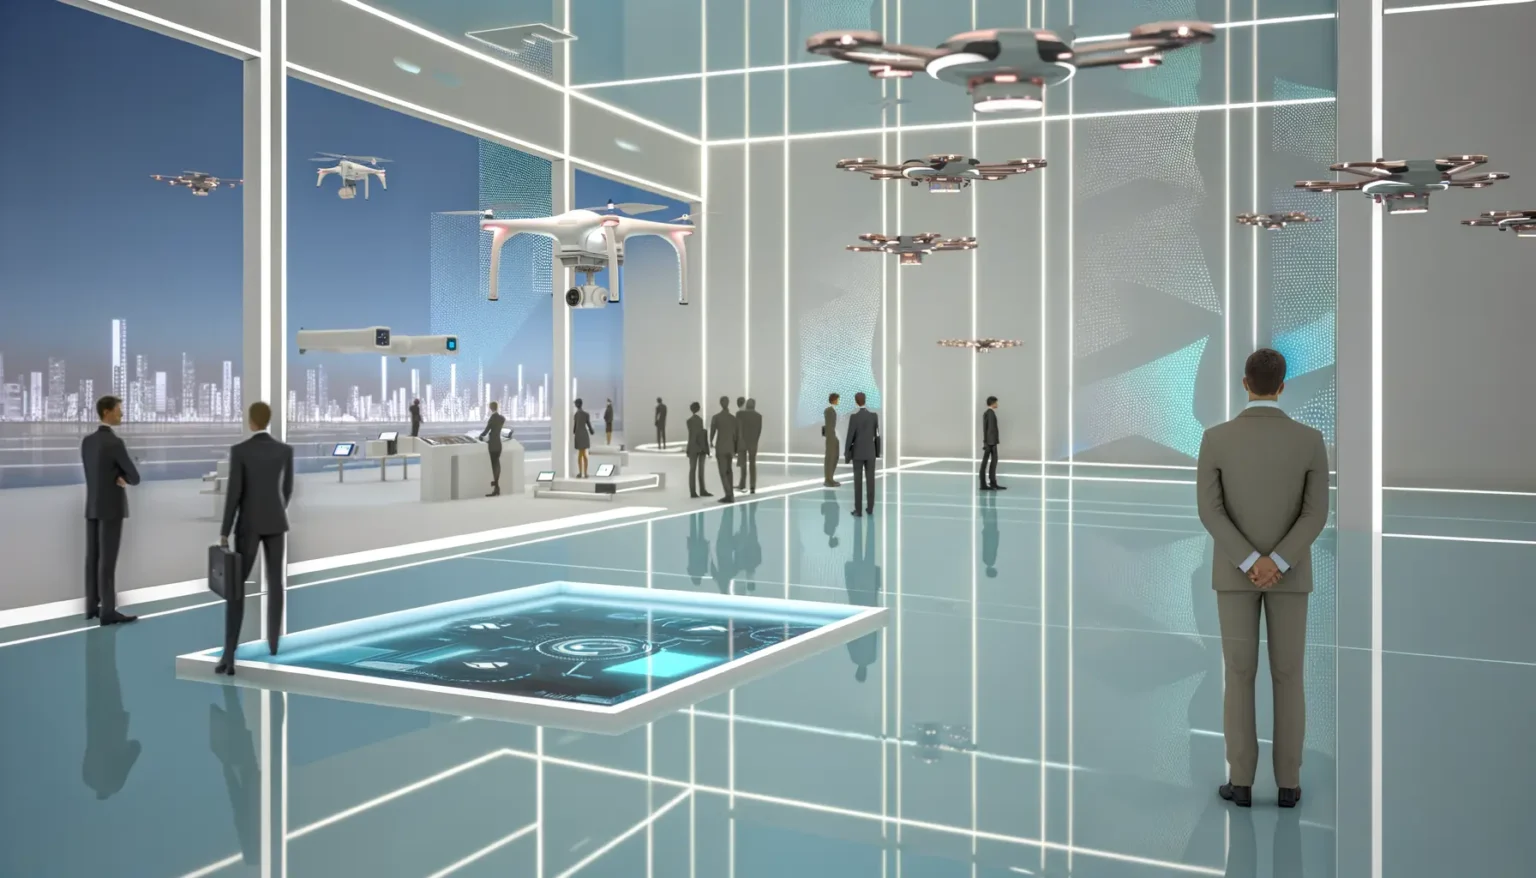 Futuristische Lobby mit mehreren Personen, die Anzüge tragen und Drohnen, die im Raum schweben. Die Umgebung hat ein modernes Design mit transparenten Oberflächen und digitalen Anzeigen. Im Hintergrund ist eine städtische Skyline durch die Fenster sichtbar.